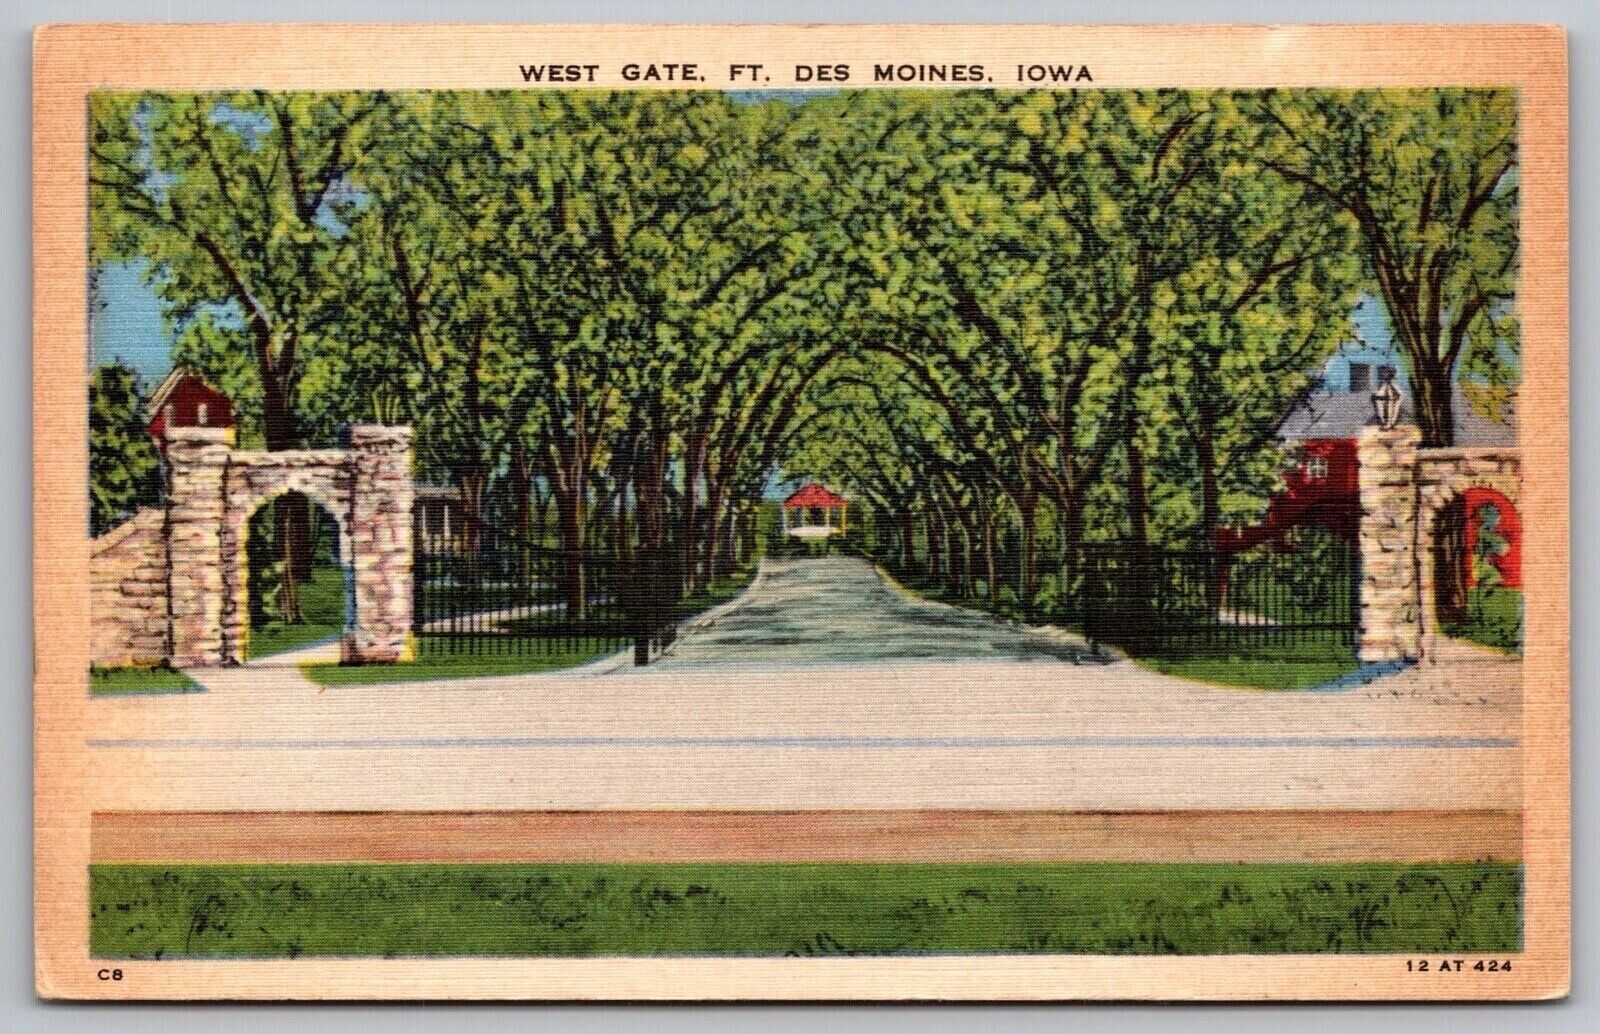 West Gate Fort Des Moines Iowa Street View Gateway Entrance Linen VTG Postcard